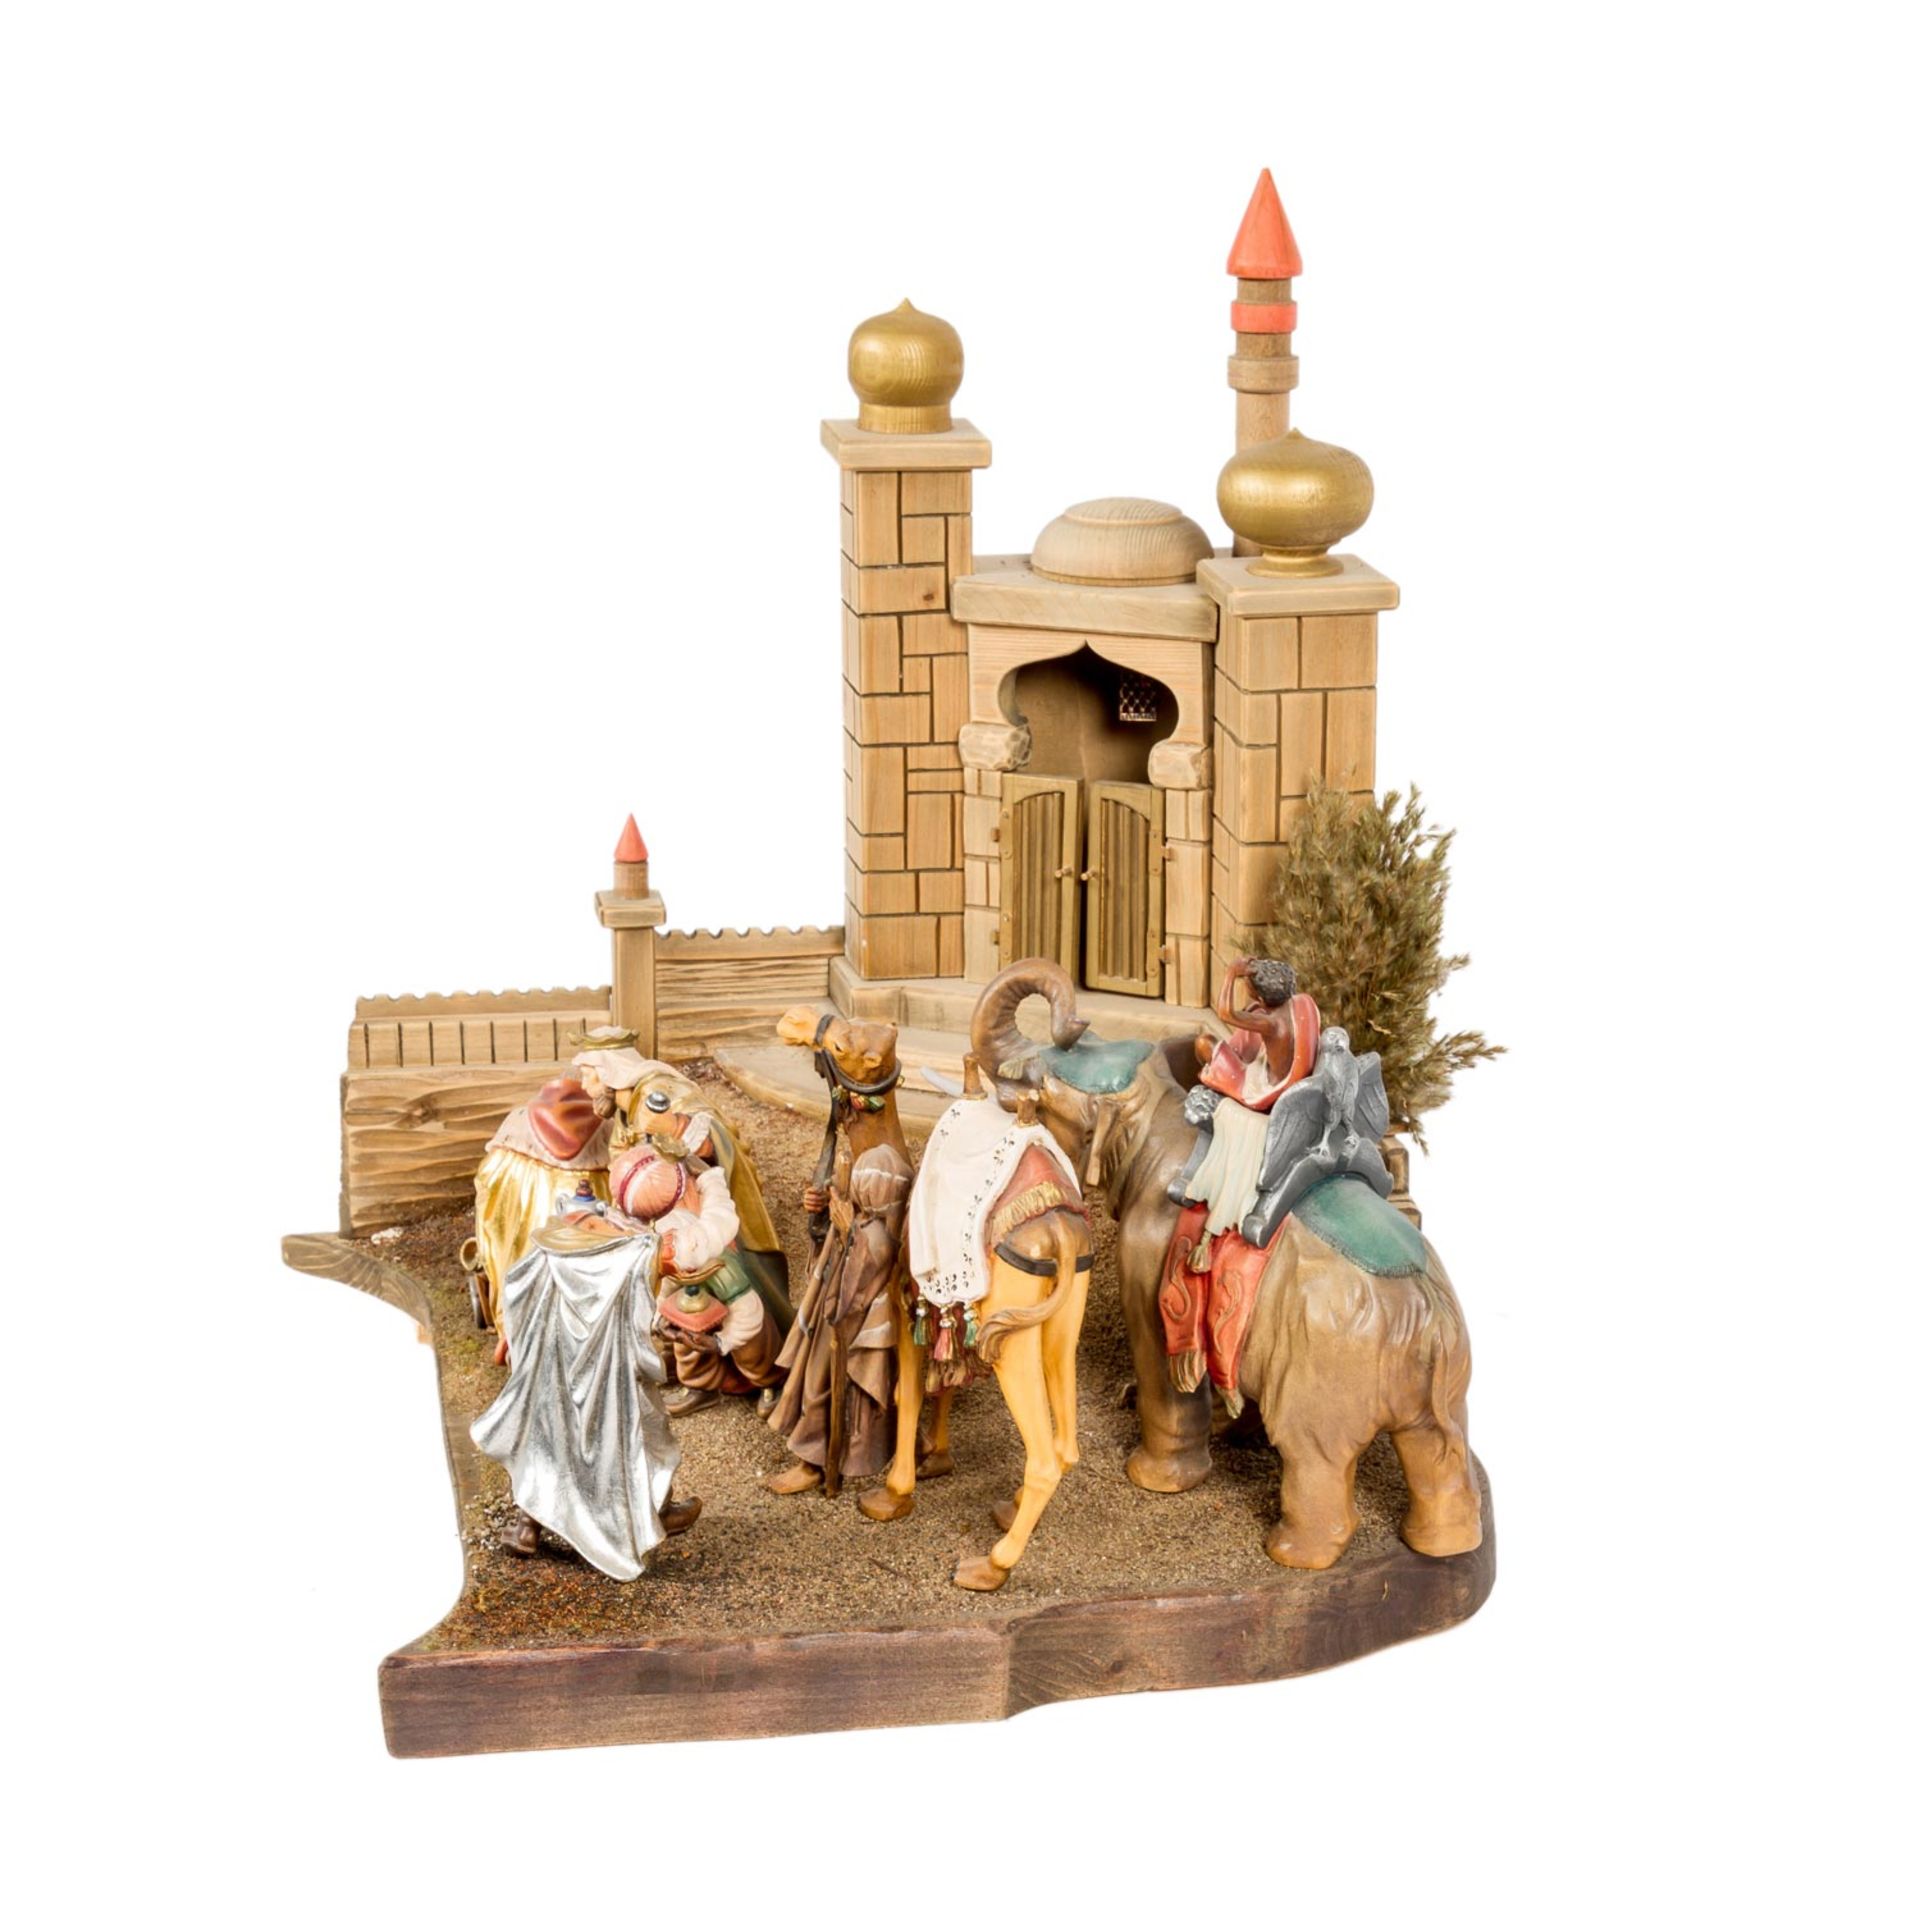 ANBETUNG DER KÖNIGE20. Jh., Farbig bemalte Holzfiguren, Figurengröße ca. 23 cm, Krippenlandschaft, - Bild 5 aus 5